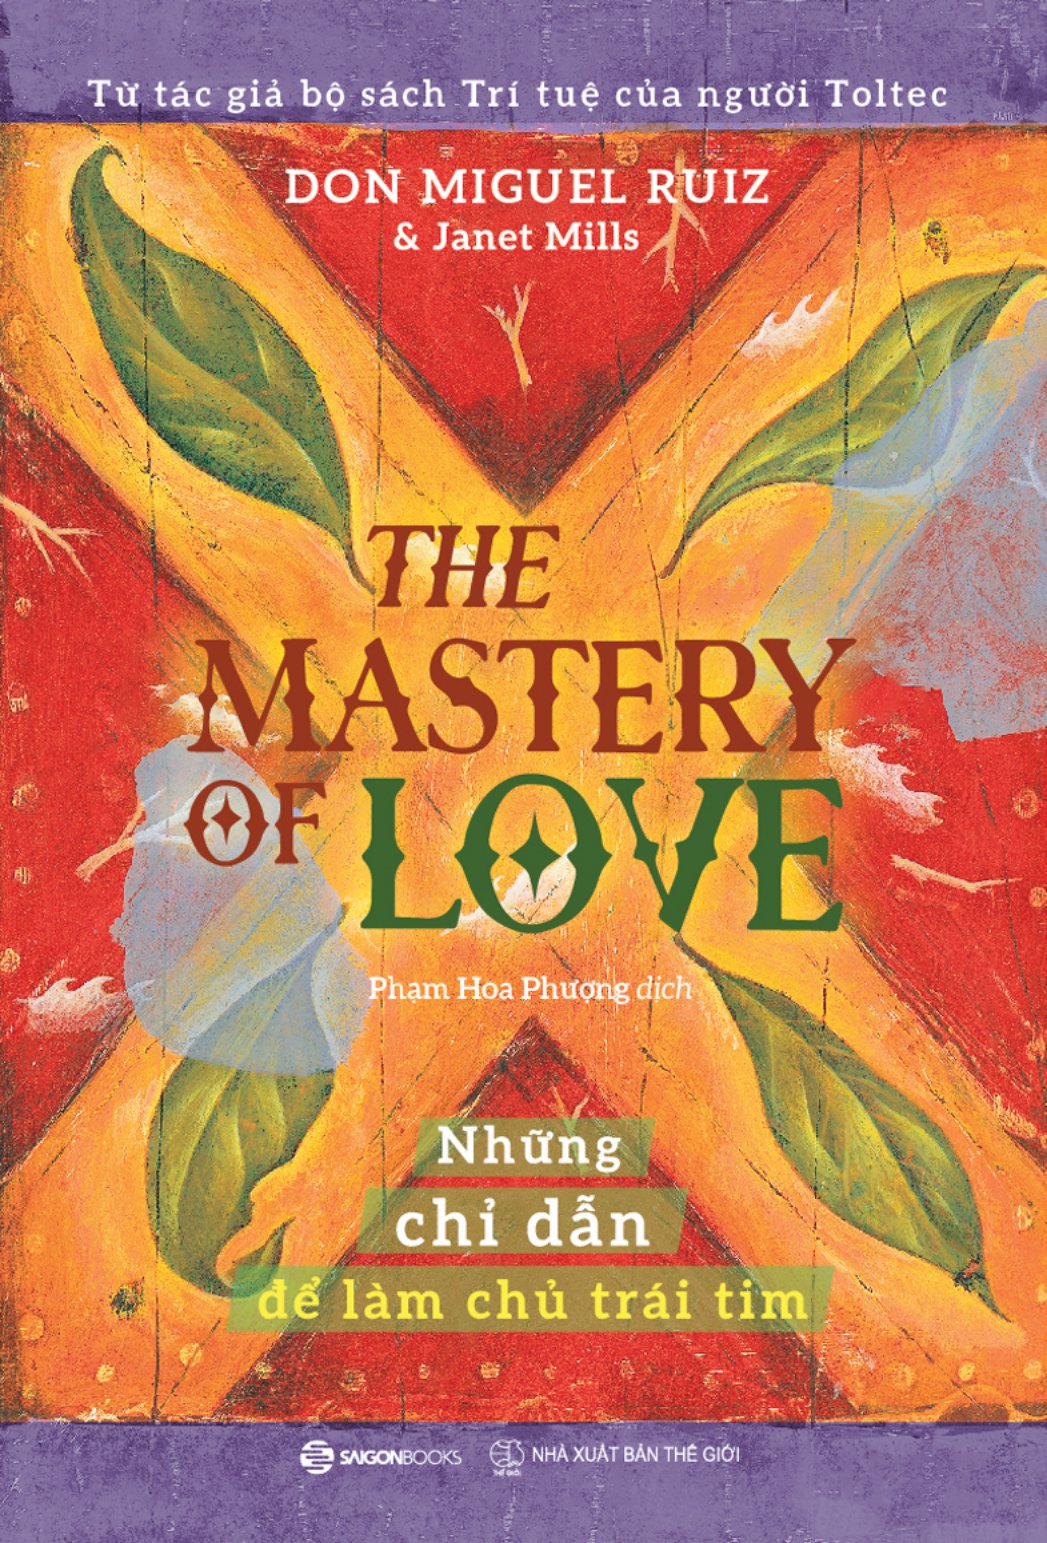 The Mastery Of Love - Những Chỉ Dẫn Để Làm Chủ Trái Tim PDF